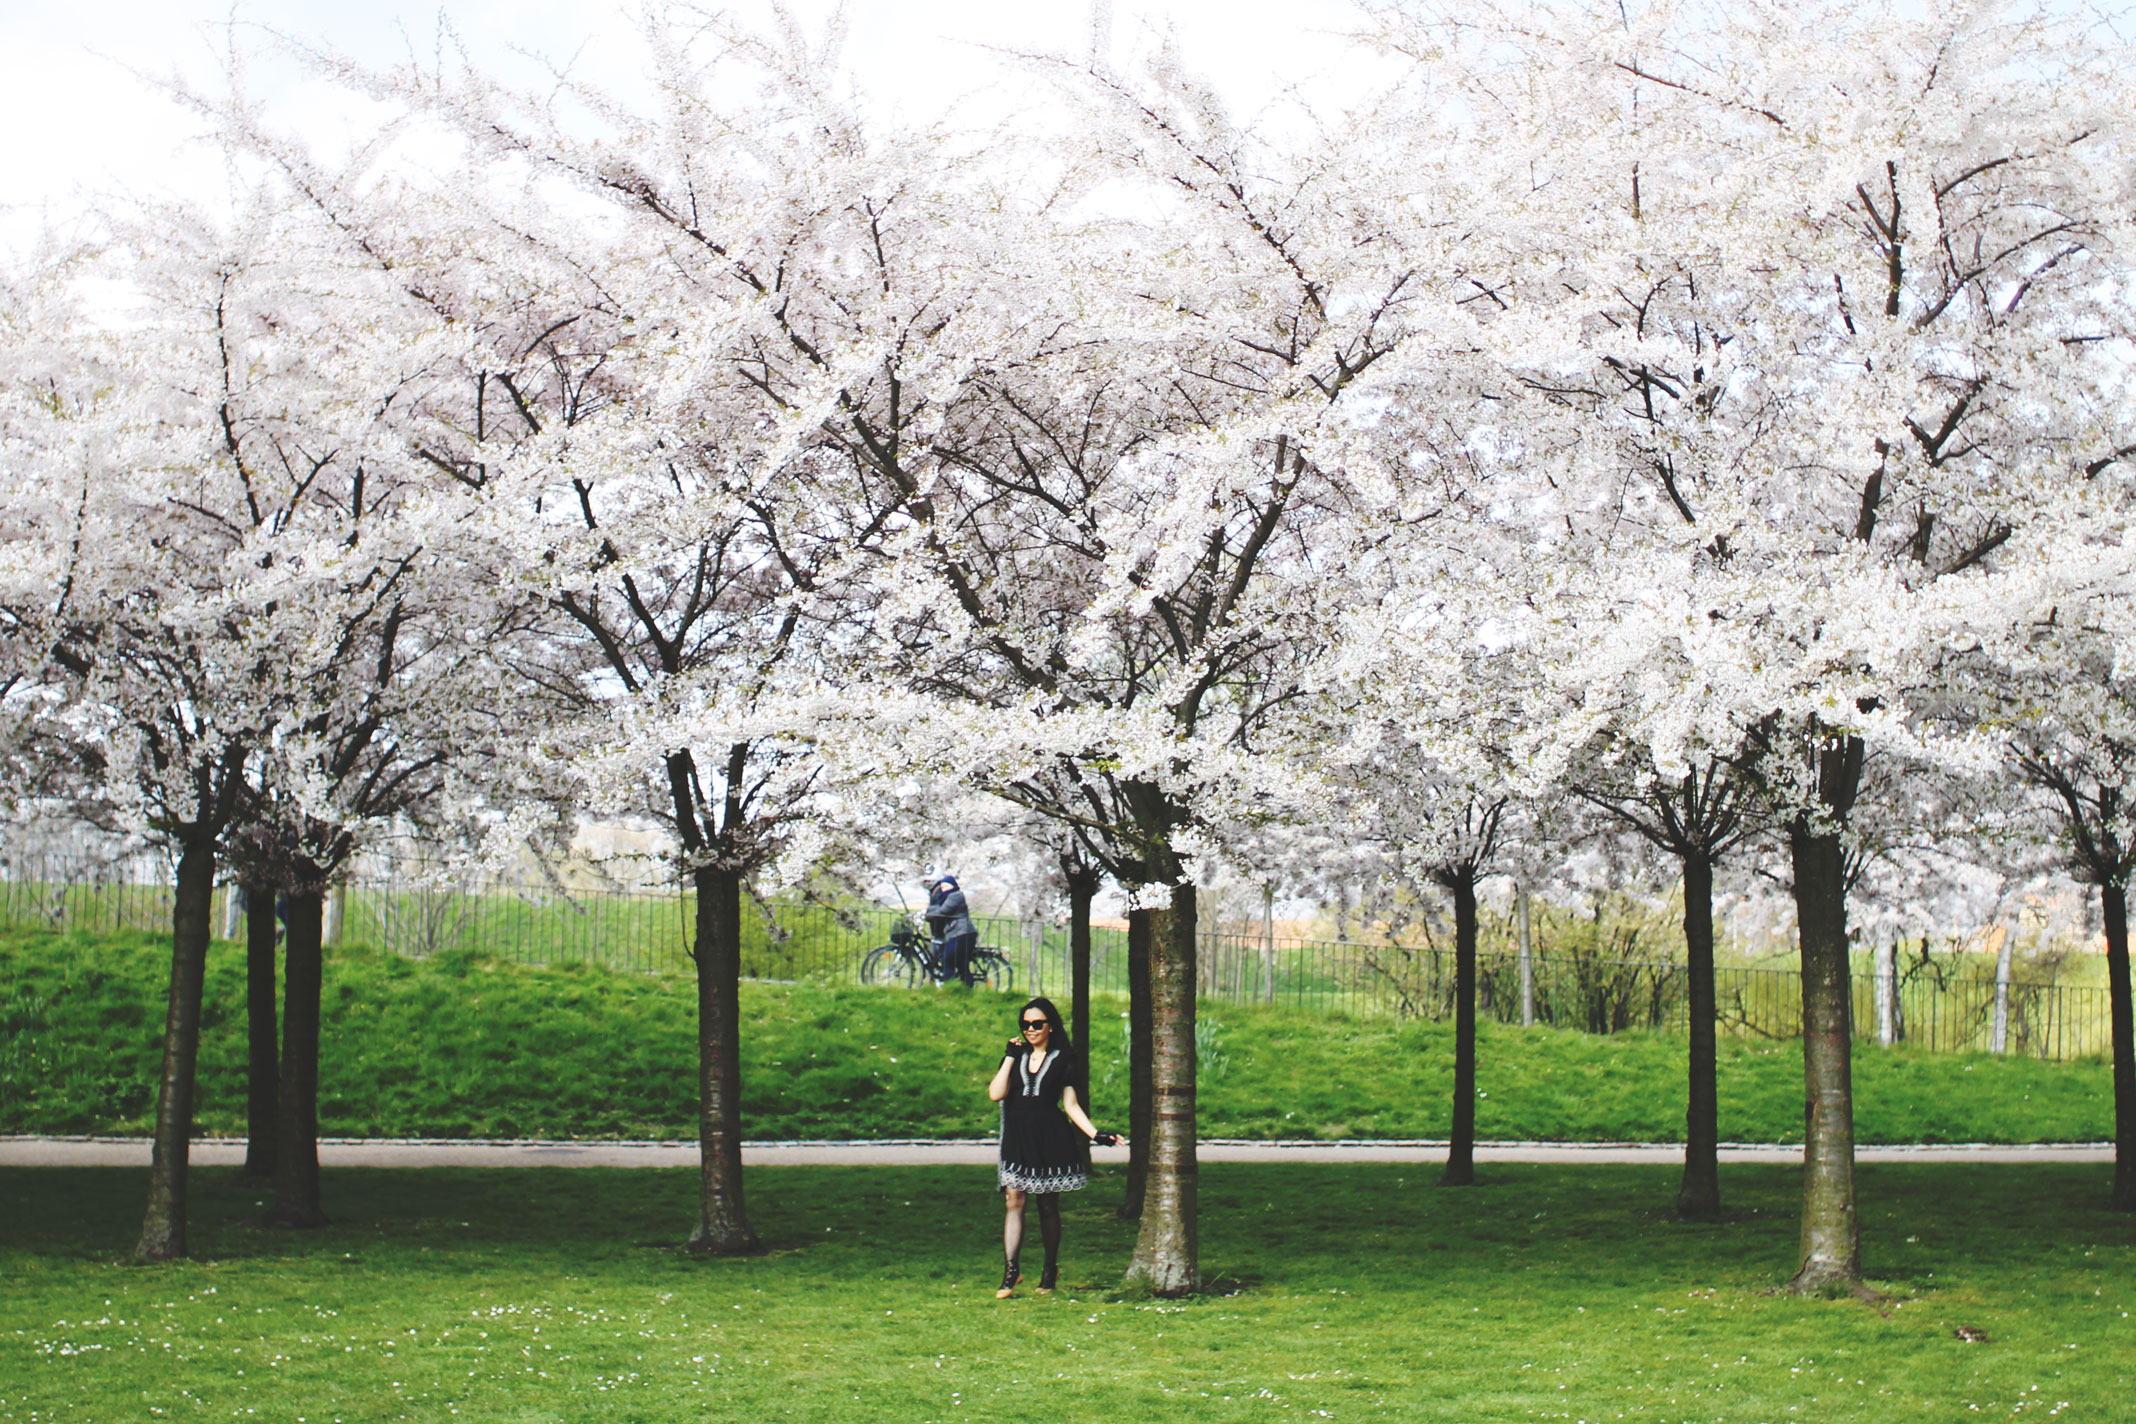 STYLEAT30 Travel Blog - Copenhagen Sakura Festival - Cherry Blossoms Denmark - 06